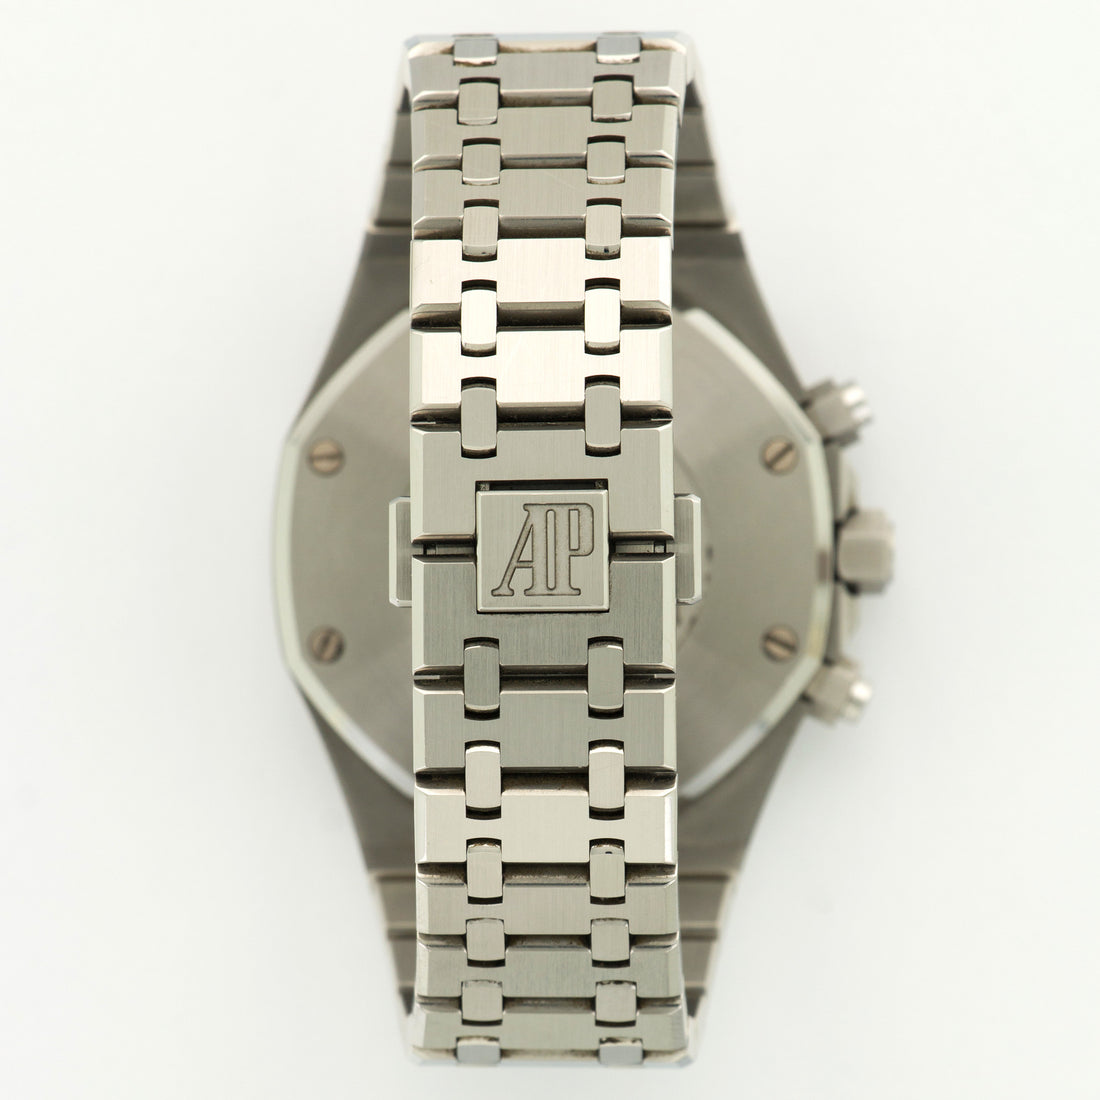 Audemars Piguet Royal Oak Chronograph Watch Ref. 26331ST